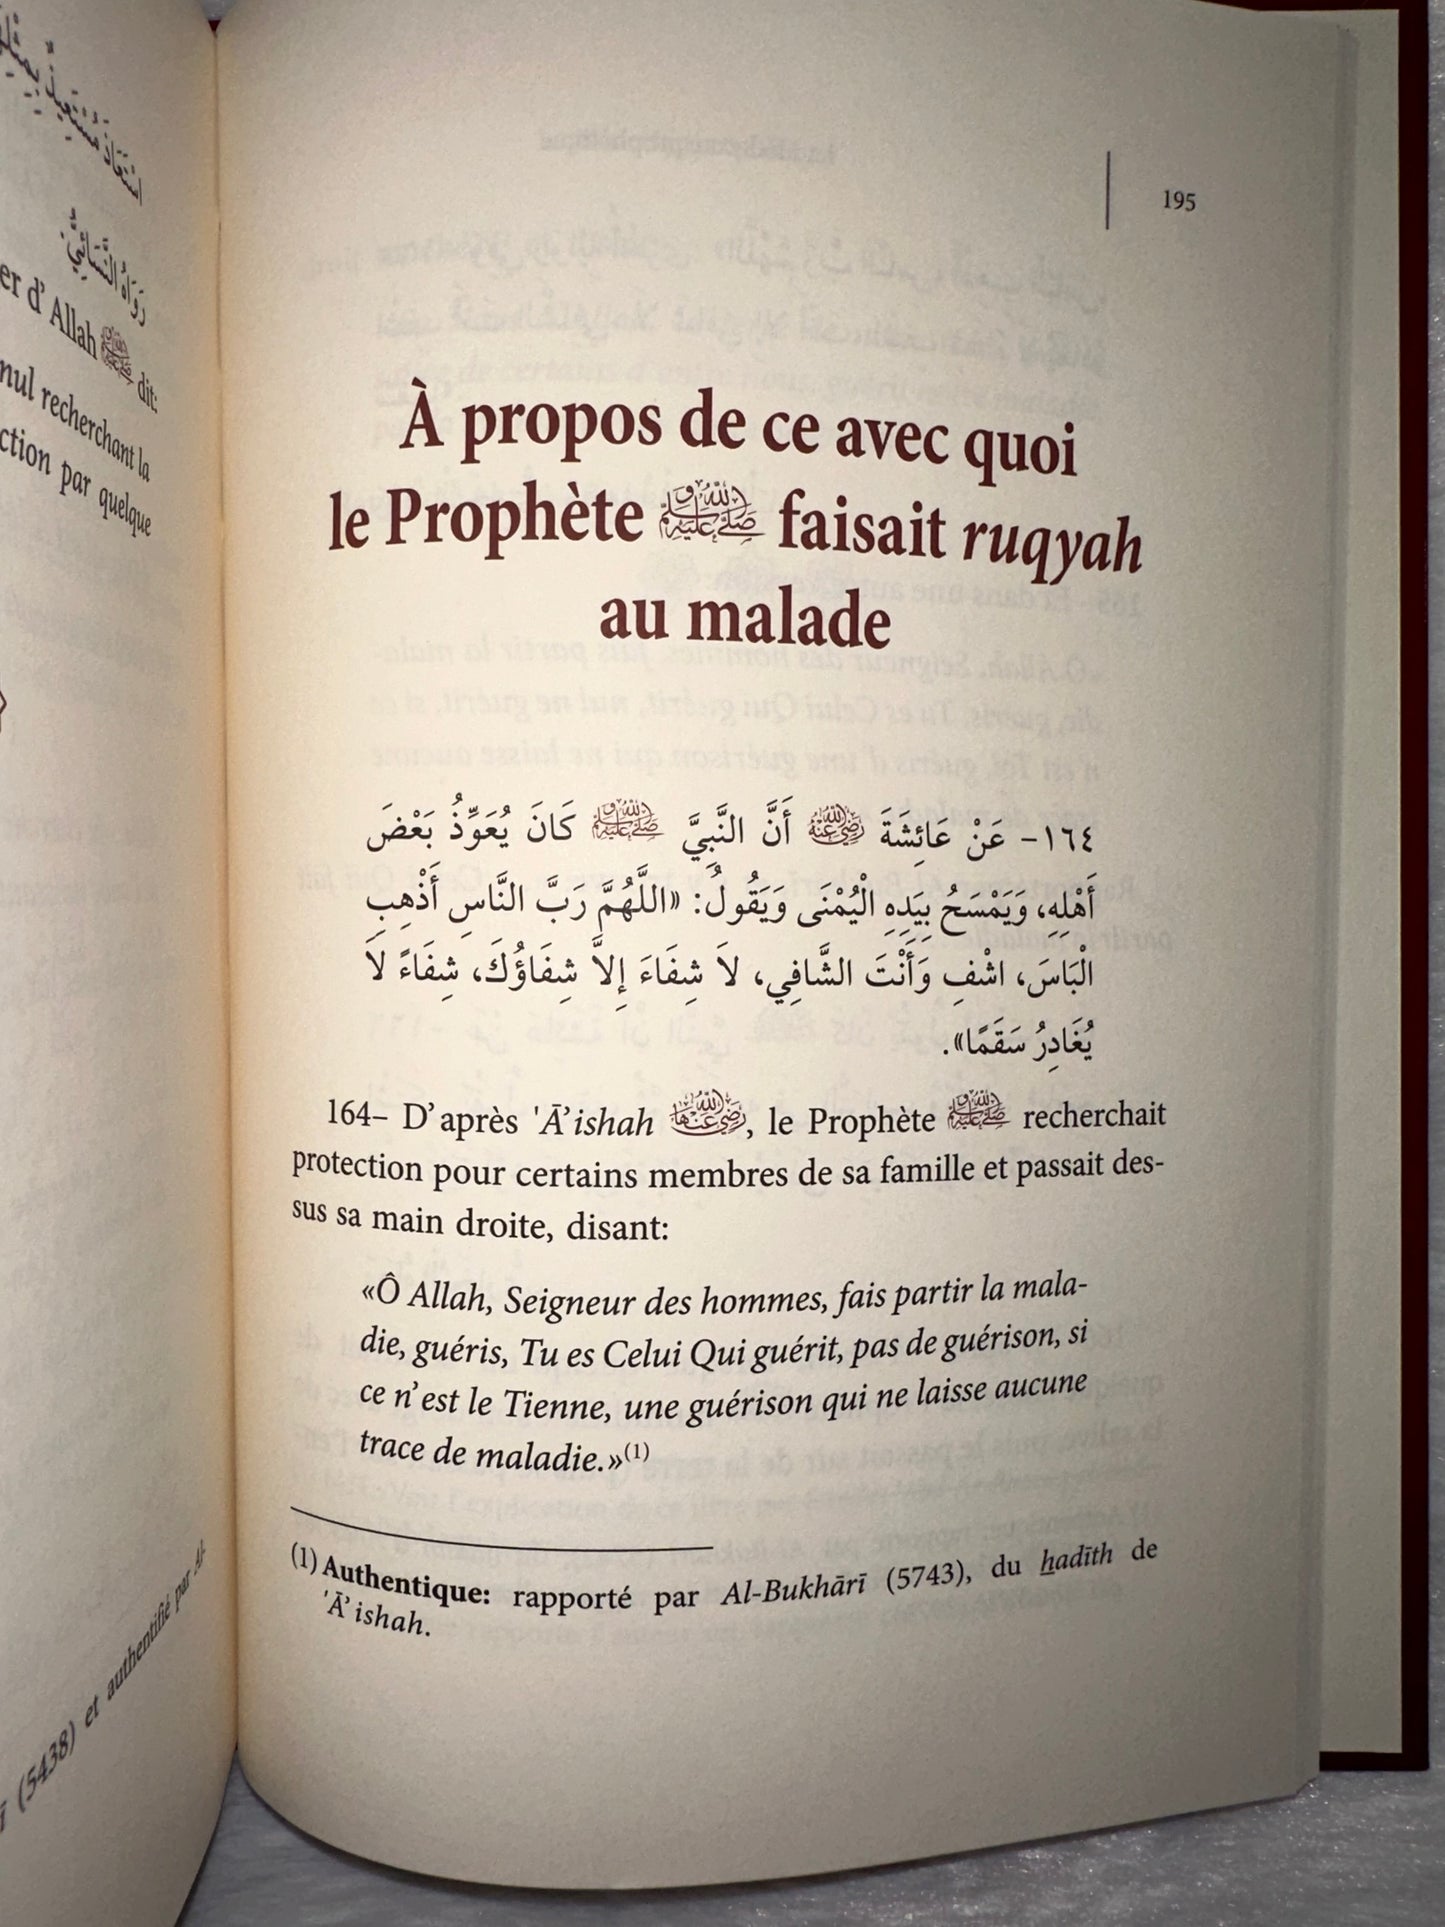 La Médecine Prophétique, De Al Hafiz Al-Maqdisi